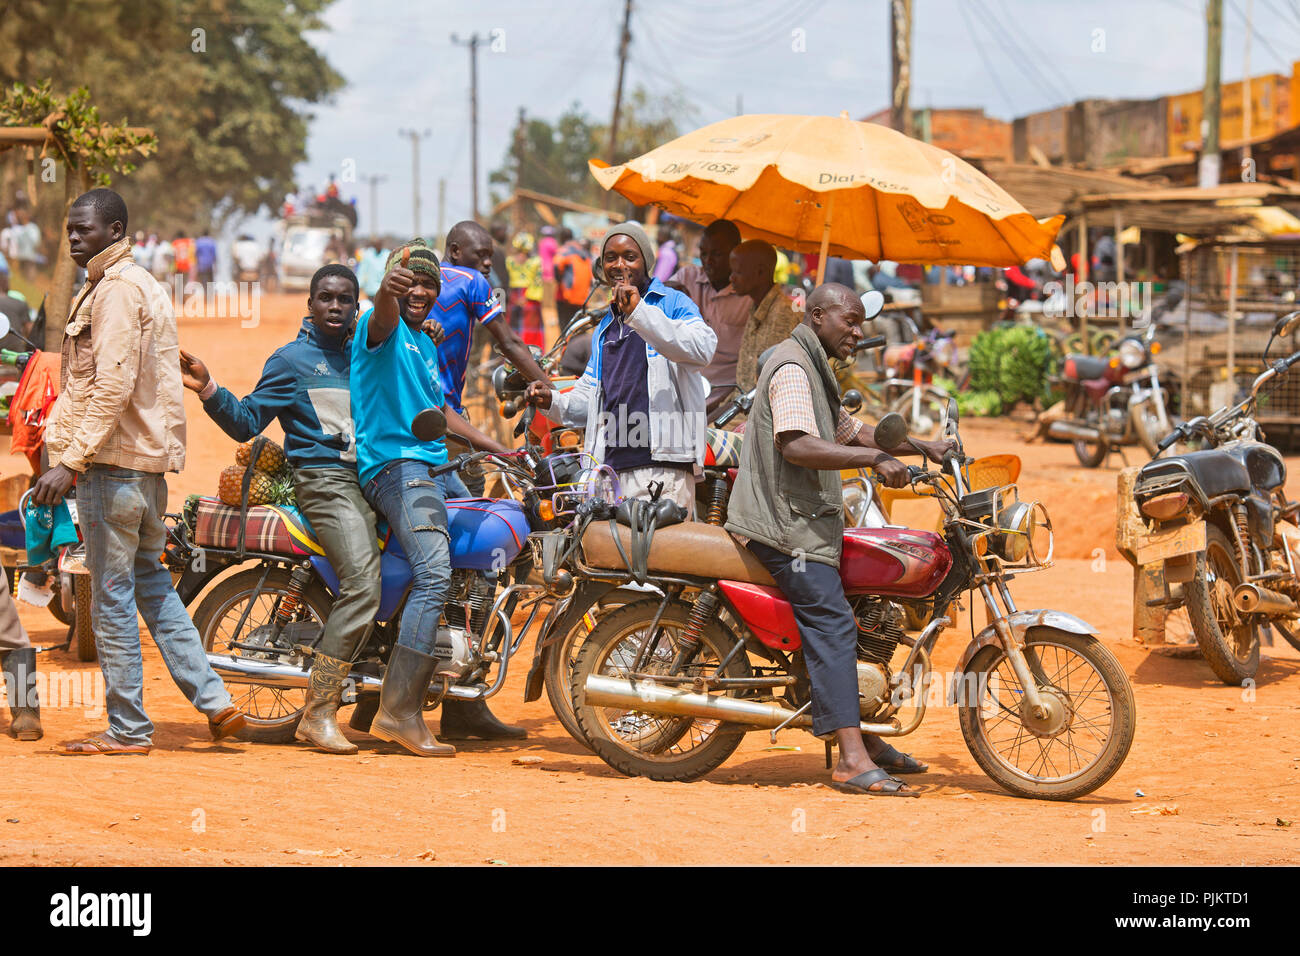 Petite ville, scène de rue, hommes avec Motos, Boda Boda, taxis de moto, Ouganda, Afrique de l'est Banque D'Images